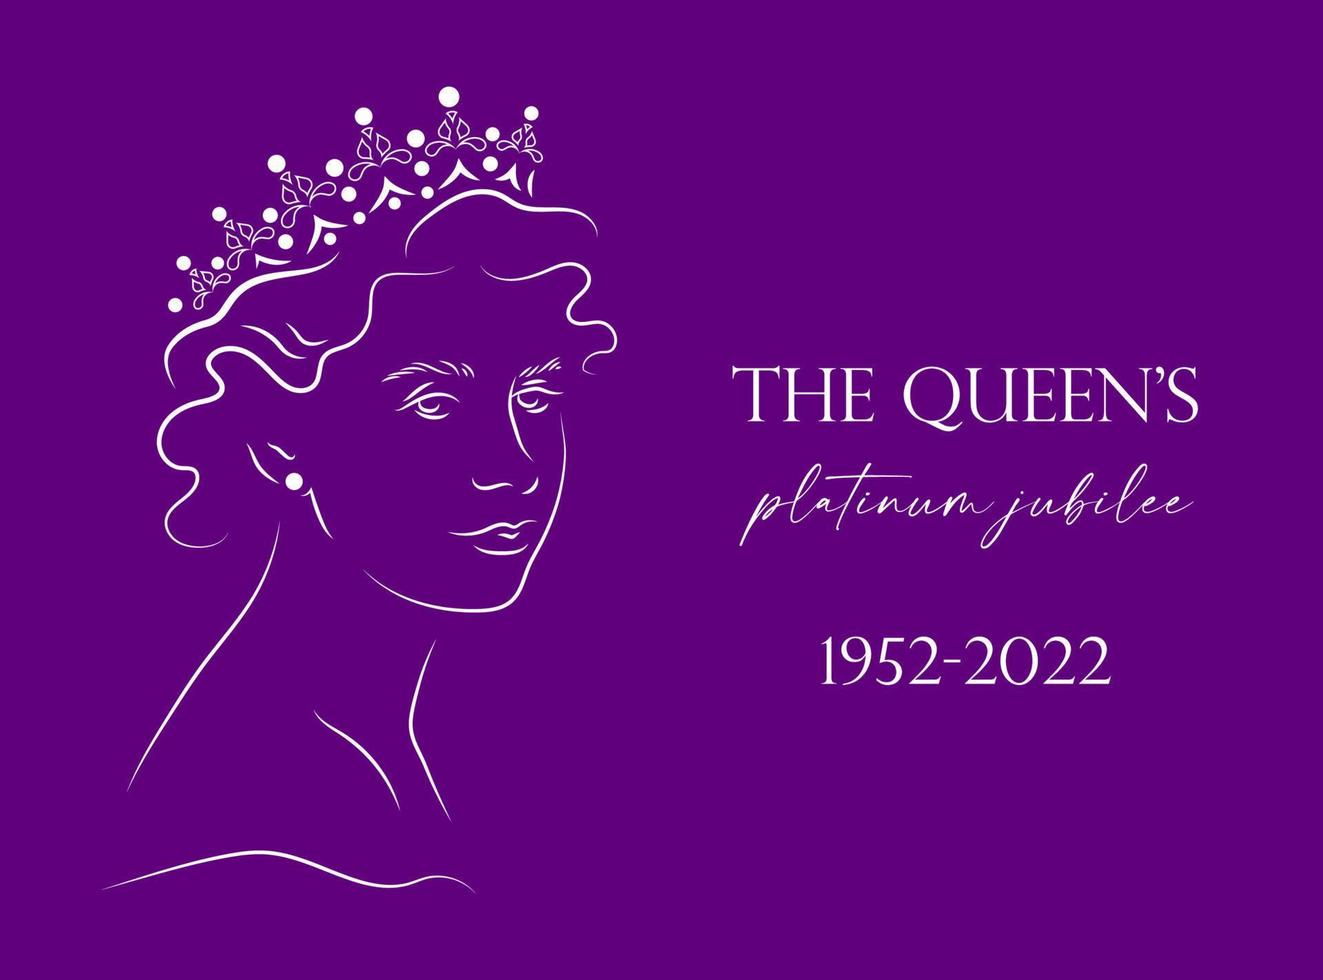 banner de celebração de 70 anos do jubileu de platina da rainha com retrato de linha da rainha elizabeth na coroa. pode ser usado para banners, flayers, cartões, convites, mídias sociais, etc. vetor